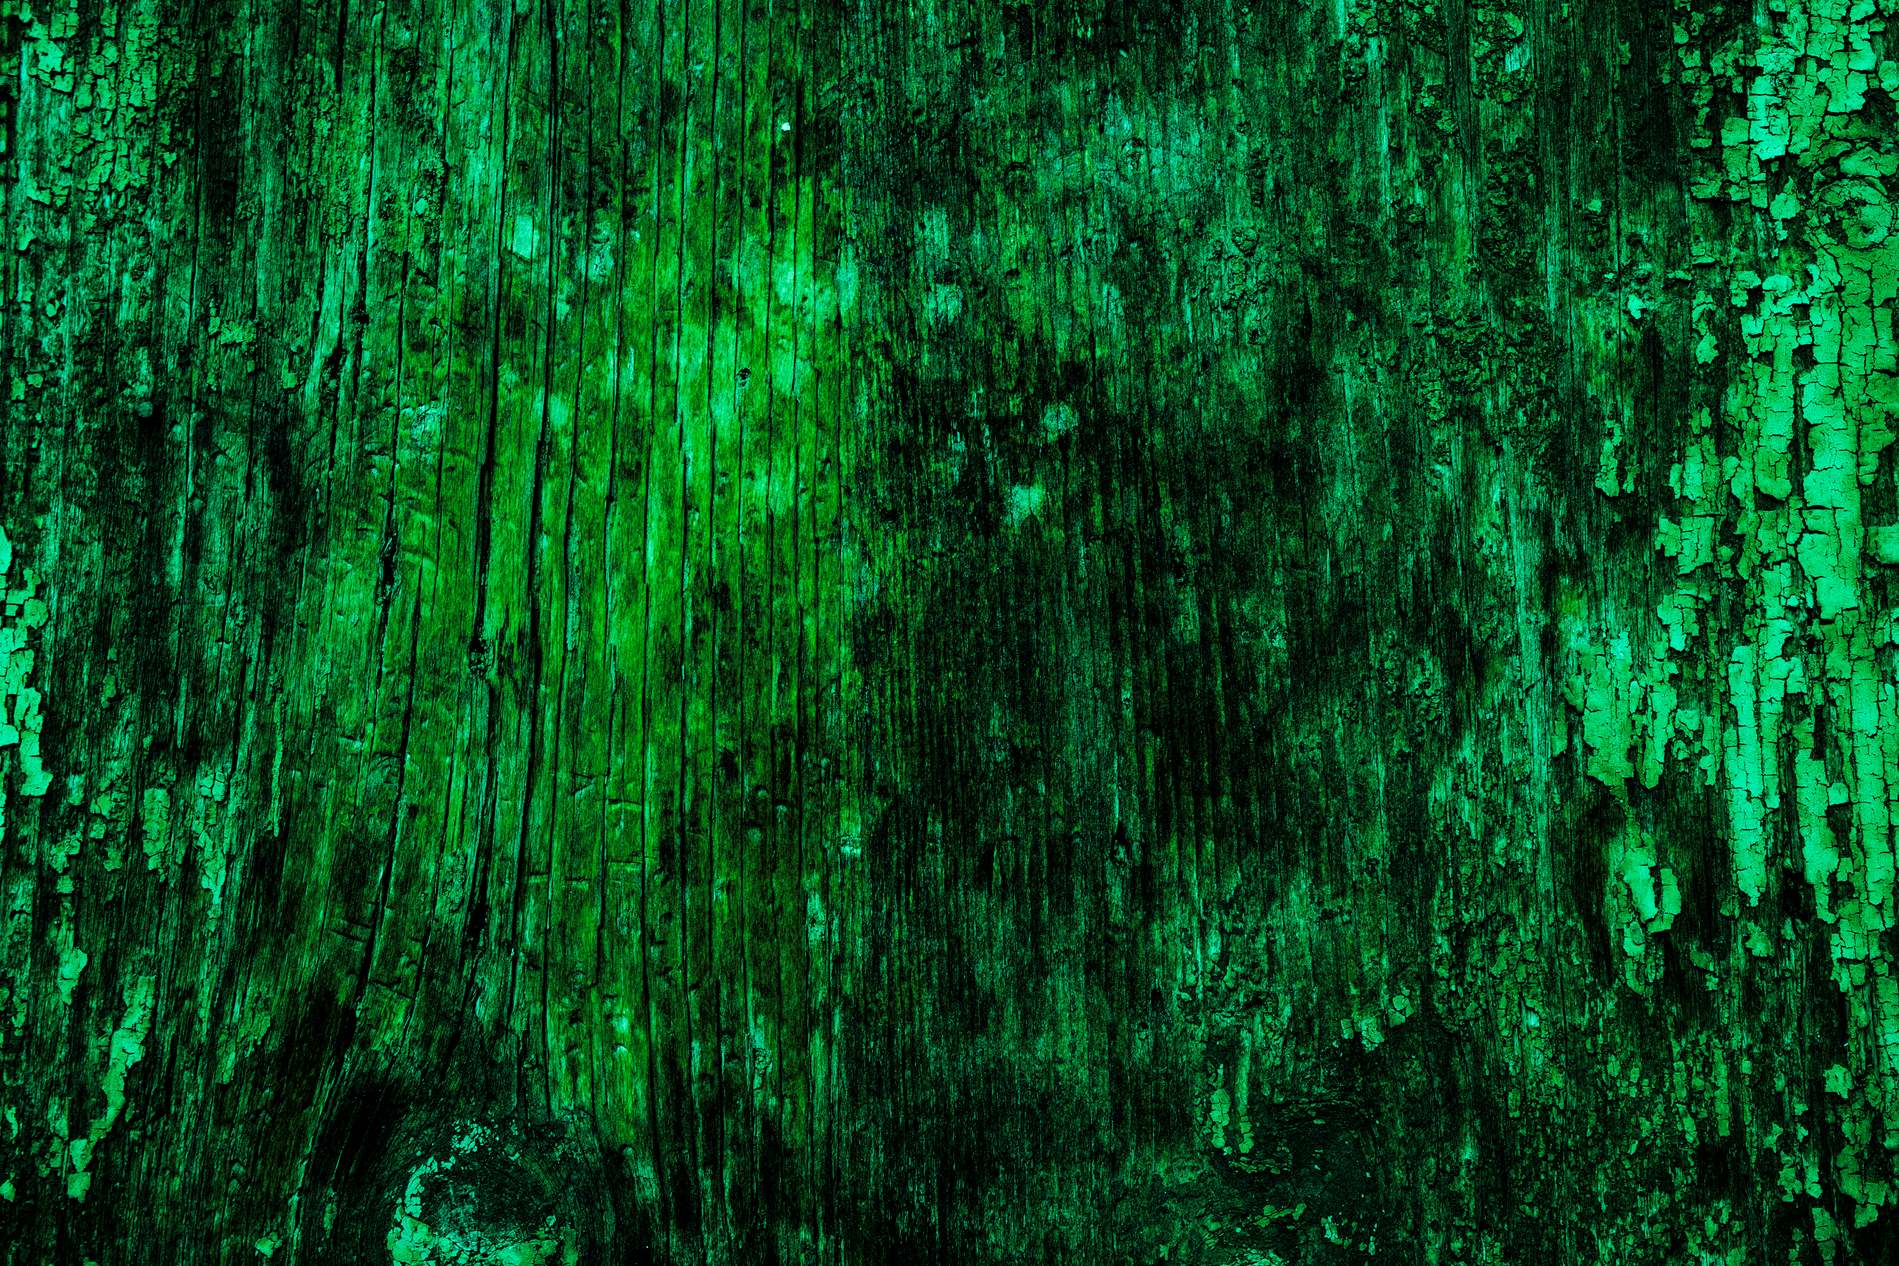 Dark Green Texture Background